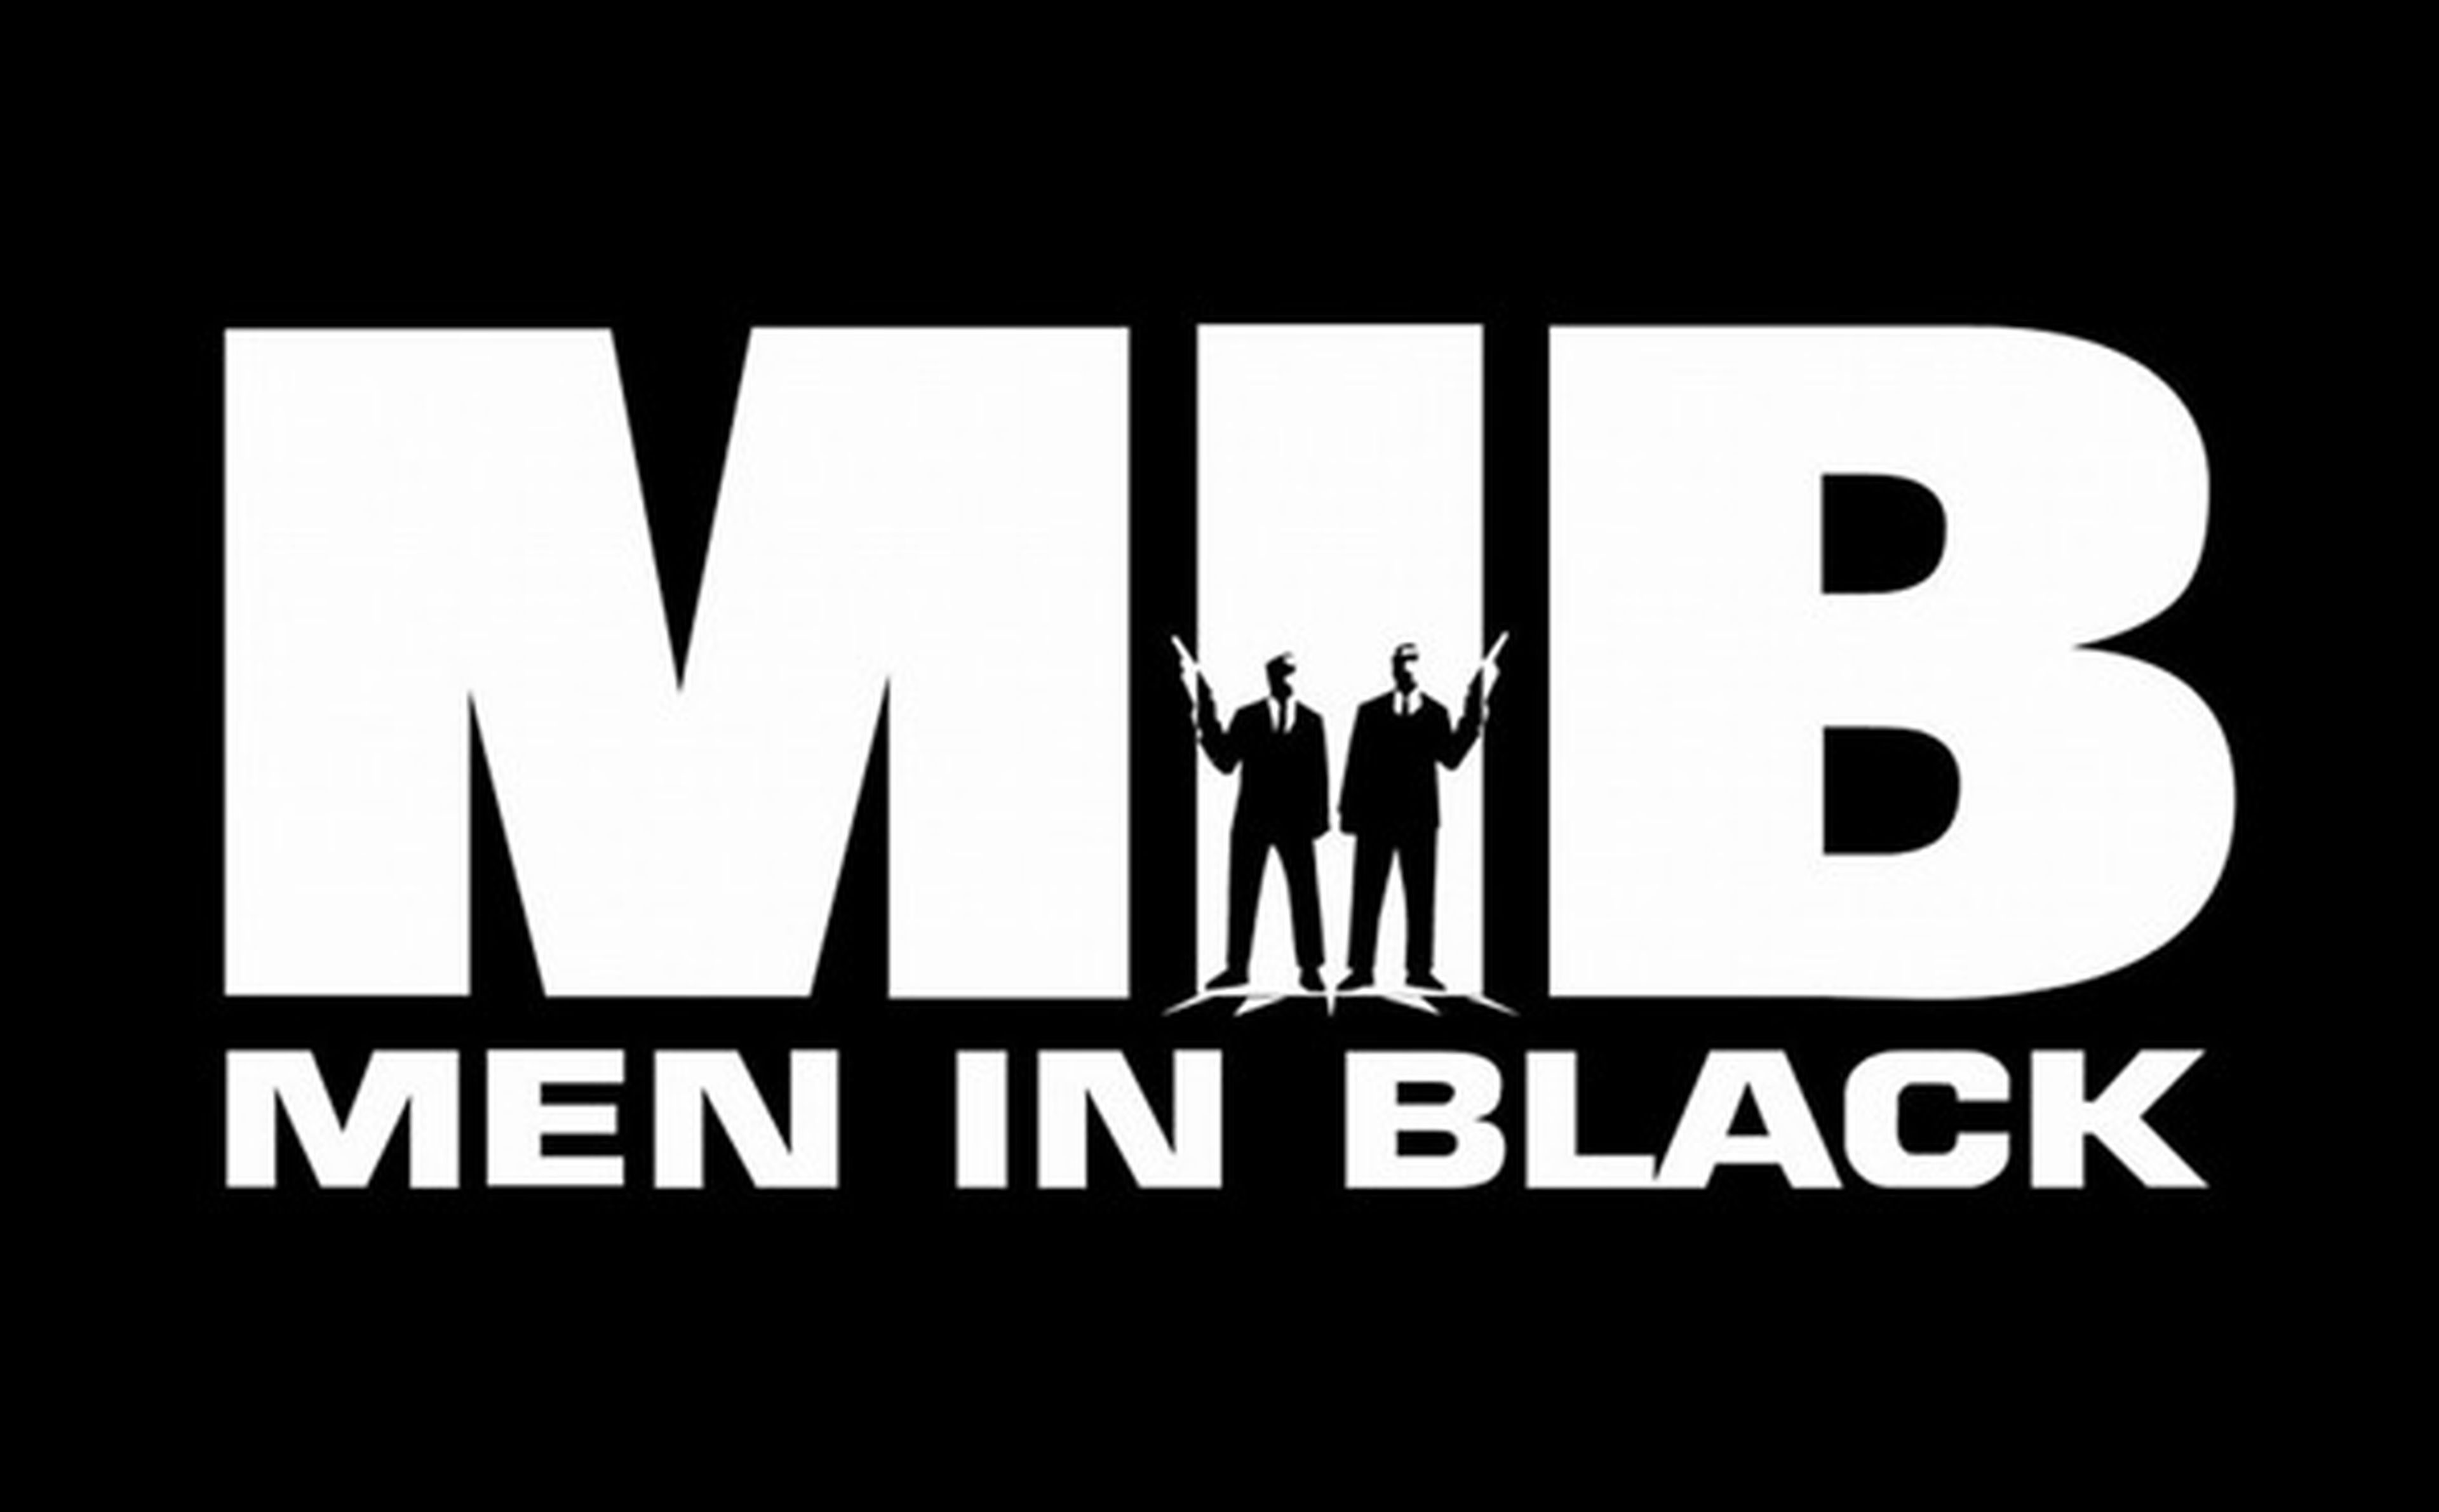 Vuelven los Hombres de Negro